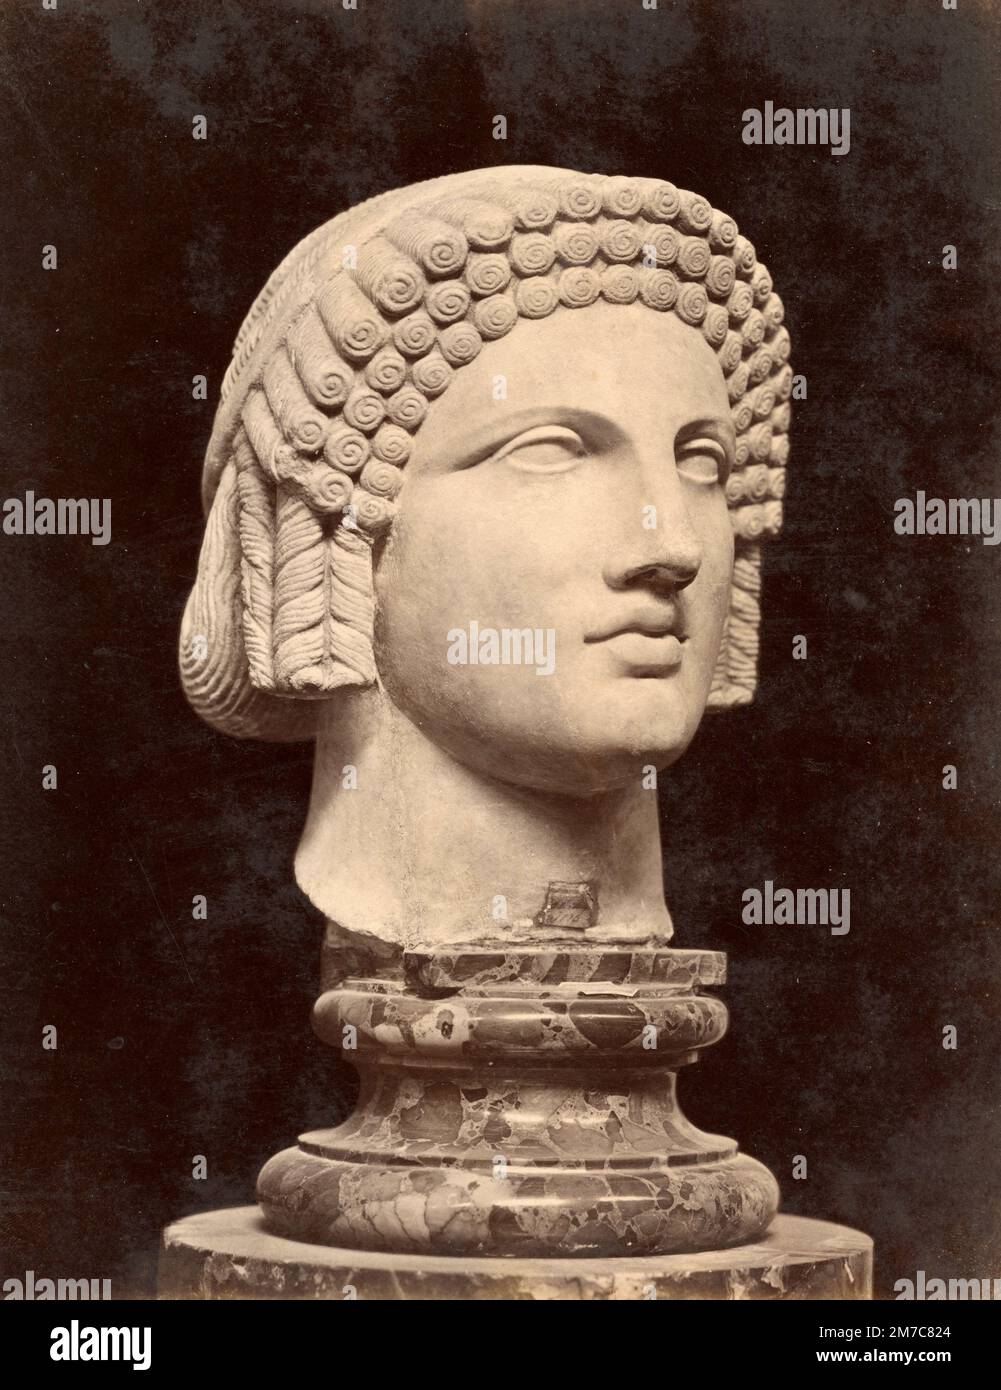 Testa arcaica, scultura romana in marmo rinvenuta a Pompei, stampa albumina, 1870s Foto Stock